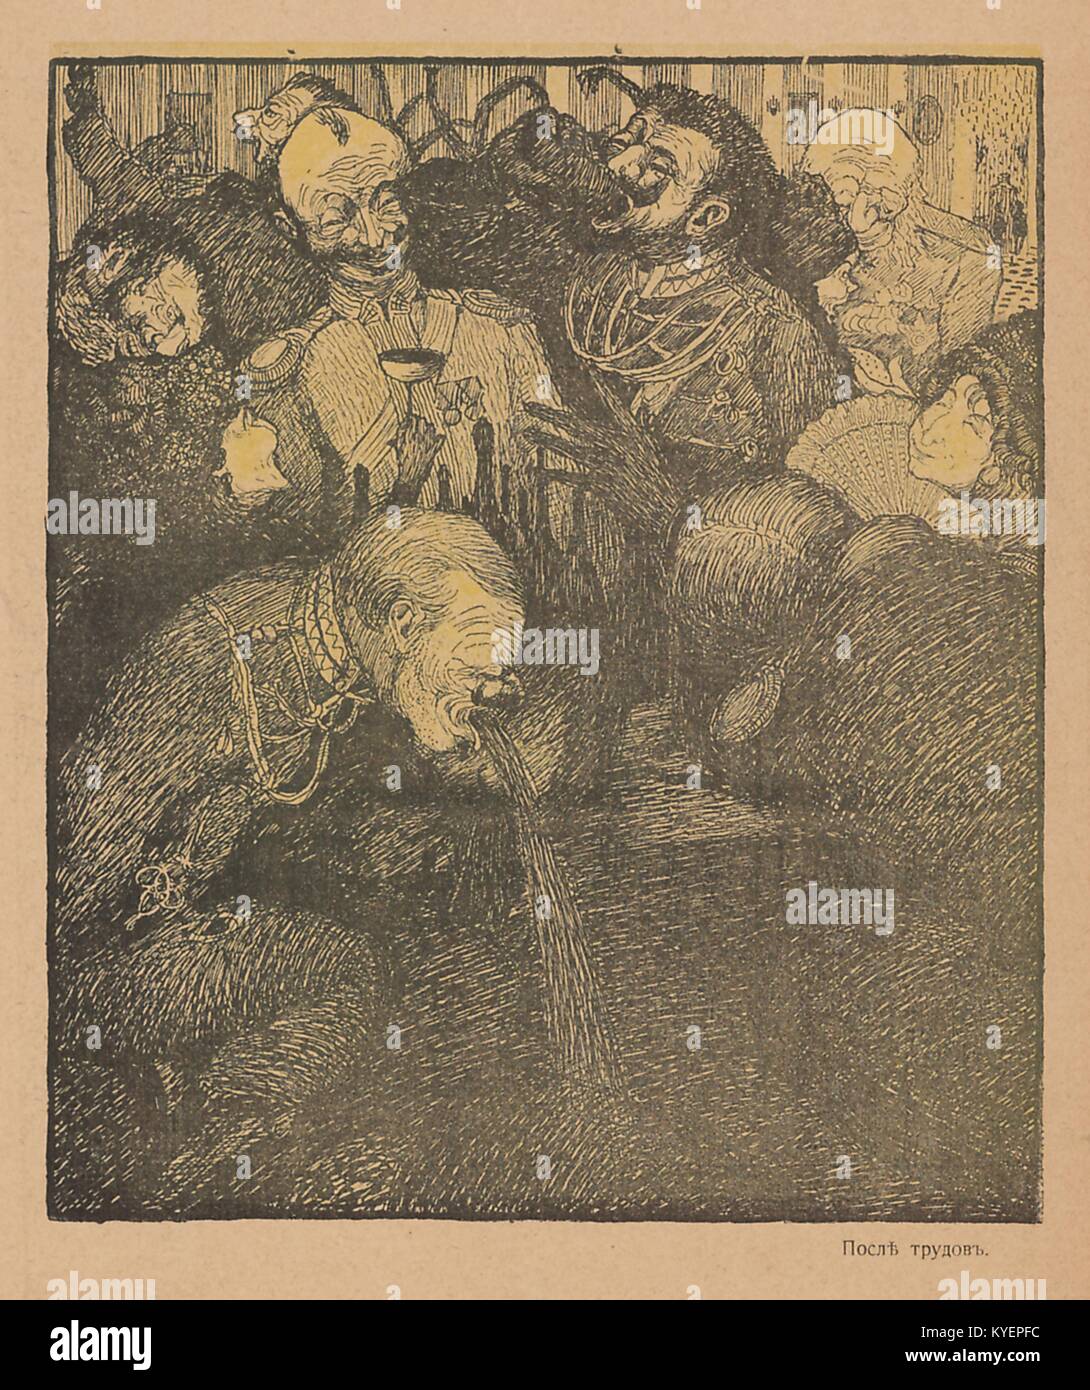 Abbildung: Aus der Russischen satirische Zeitschrift Maski (Masken), inebriated Mitglieder der oberen Klasse, Alkohol zu trinken, mit einer von ihnen warf sich in den Vordergrund, mit Text lesen "nach der Arbeit", 1906. () Stockfoto